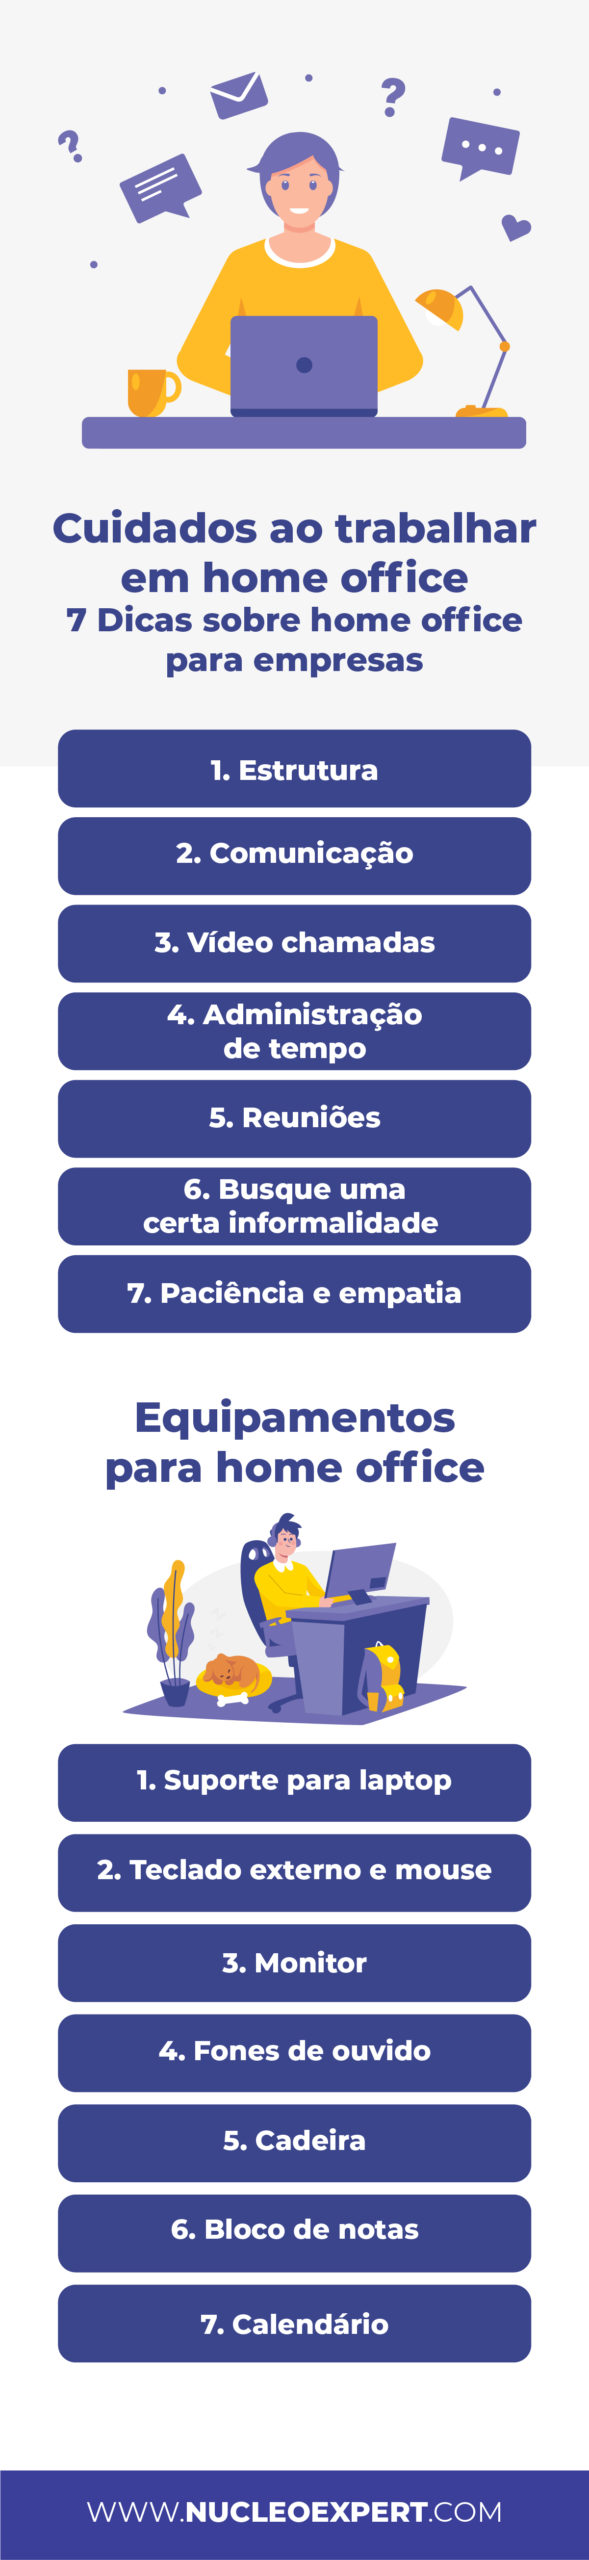 Infográfico - Home Office - Como Trabalhar Remotamente